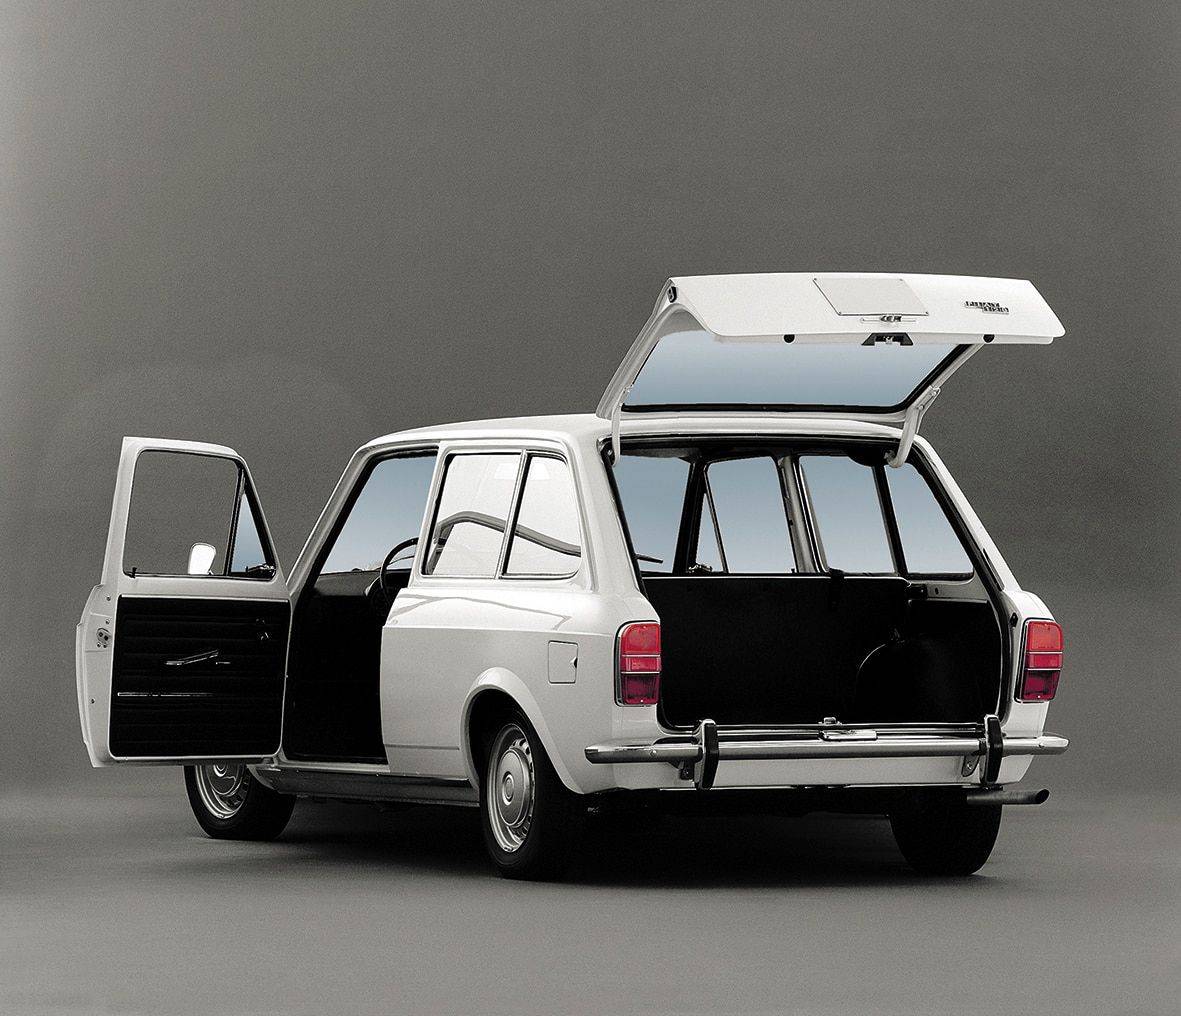 V obou letech bylo v nabídce též třídveřové kombi známé pod označením Familiare s délkou 3,9 metru a kufrem o objemu 590 litrů před sklopením zadních sedadel. Motor byl stejný jako u sedanu, jen cena vzrostla na 15 000 tuzexových korun, respektive dokonce 17 750 tuzexových korun v roce 1974.